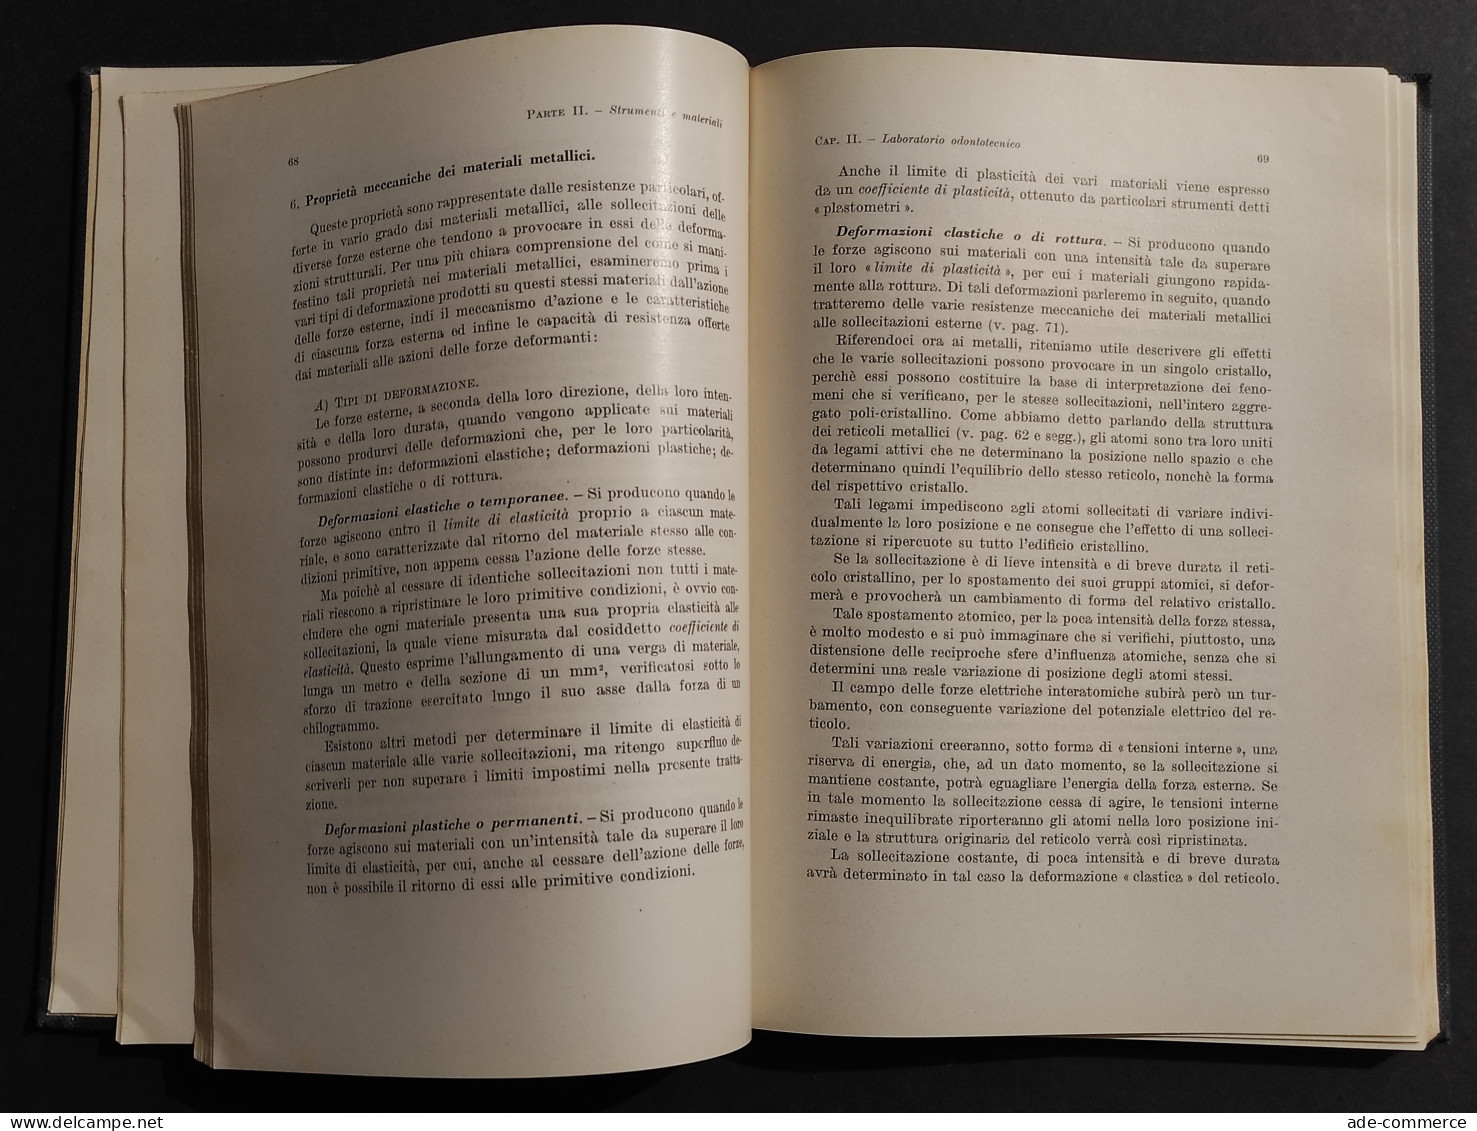 L'Arte Protesica Dei Dispositivi A Ponte - U. Mancini - Ed. Patron - 1956 - Medizin, Psychologie